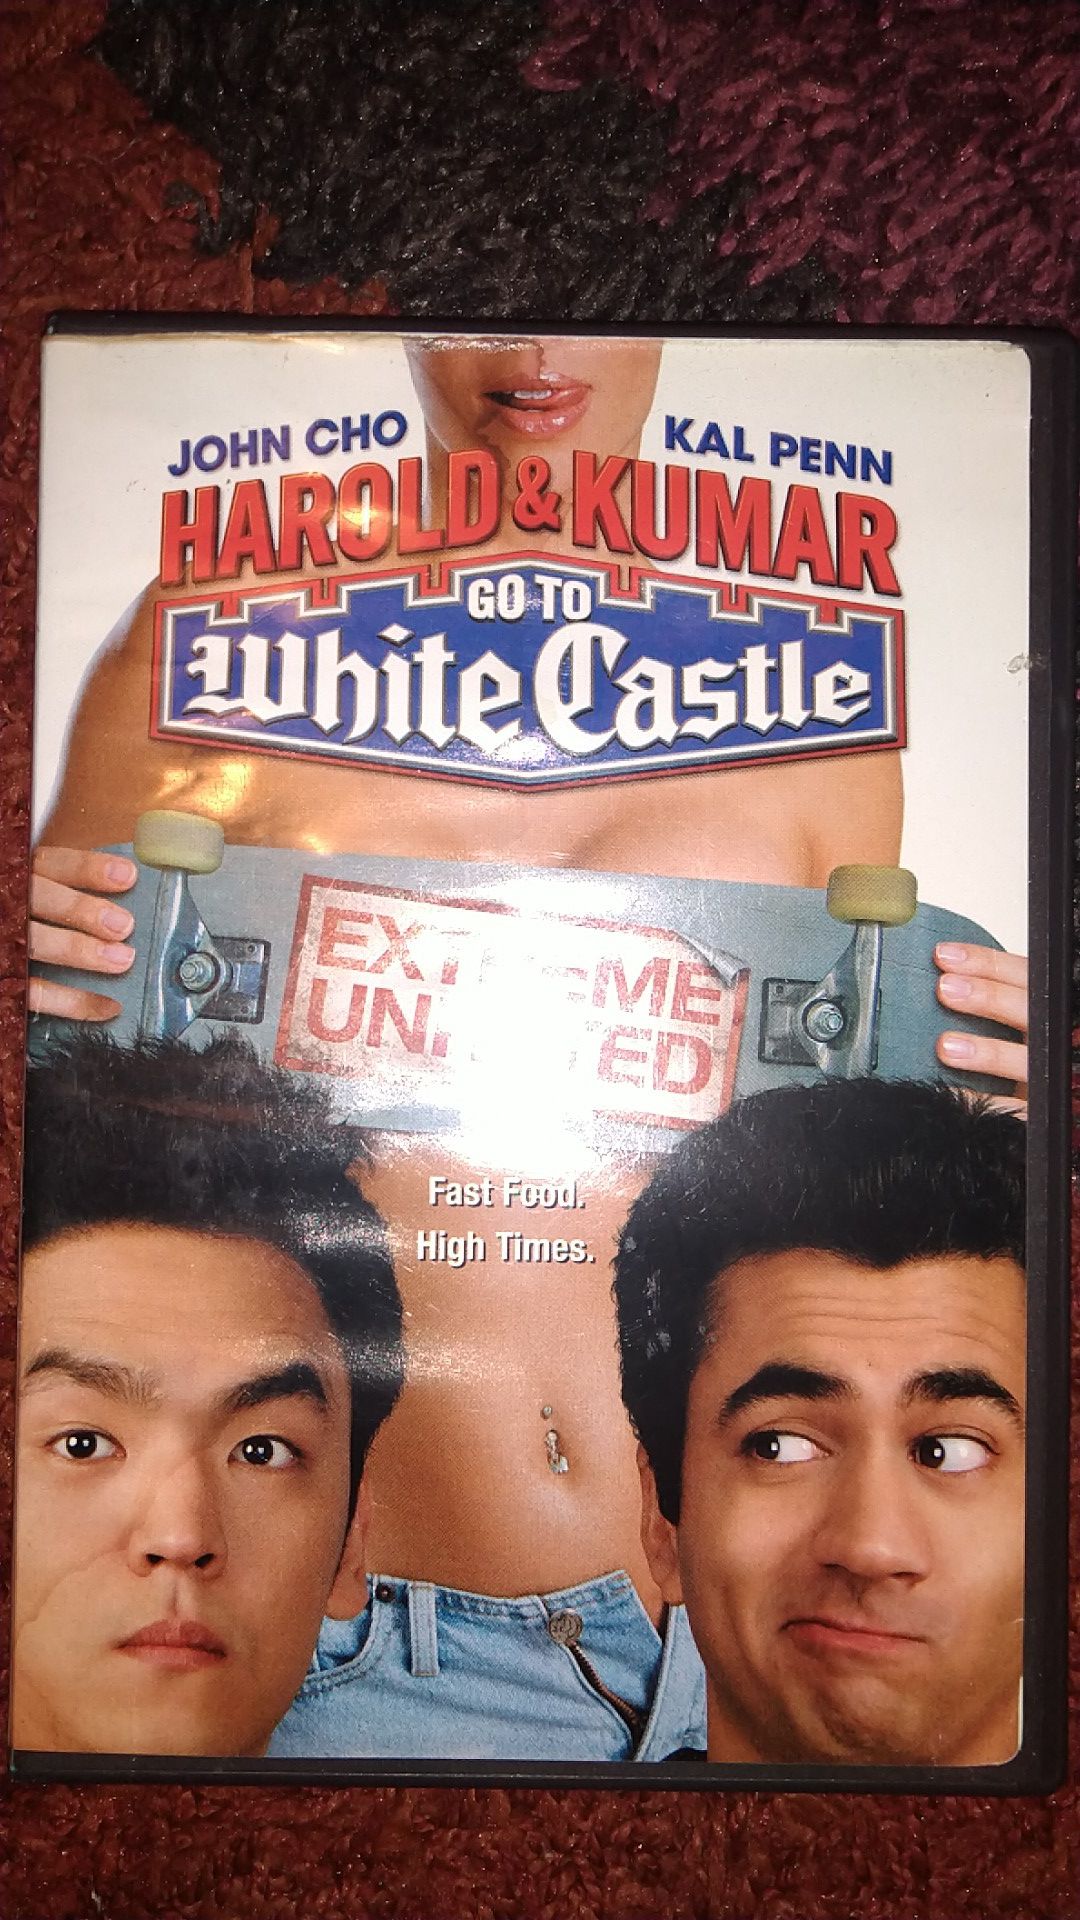 Harold &Kumar Go To White Castle